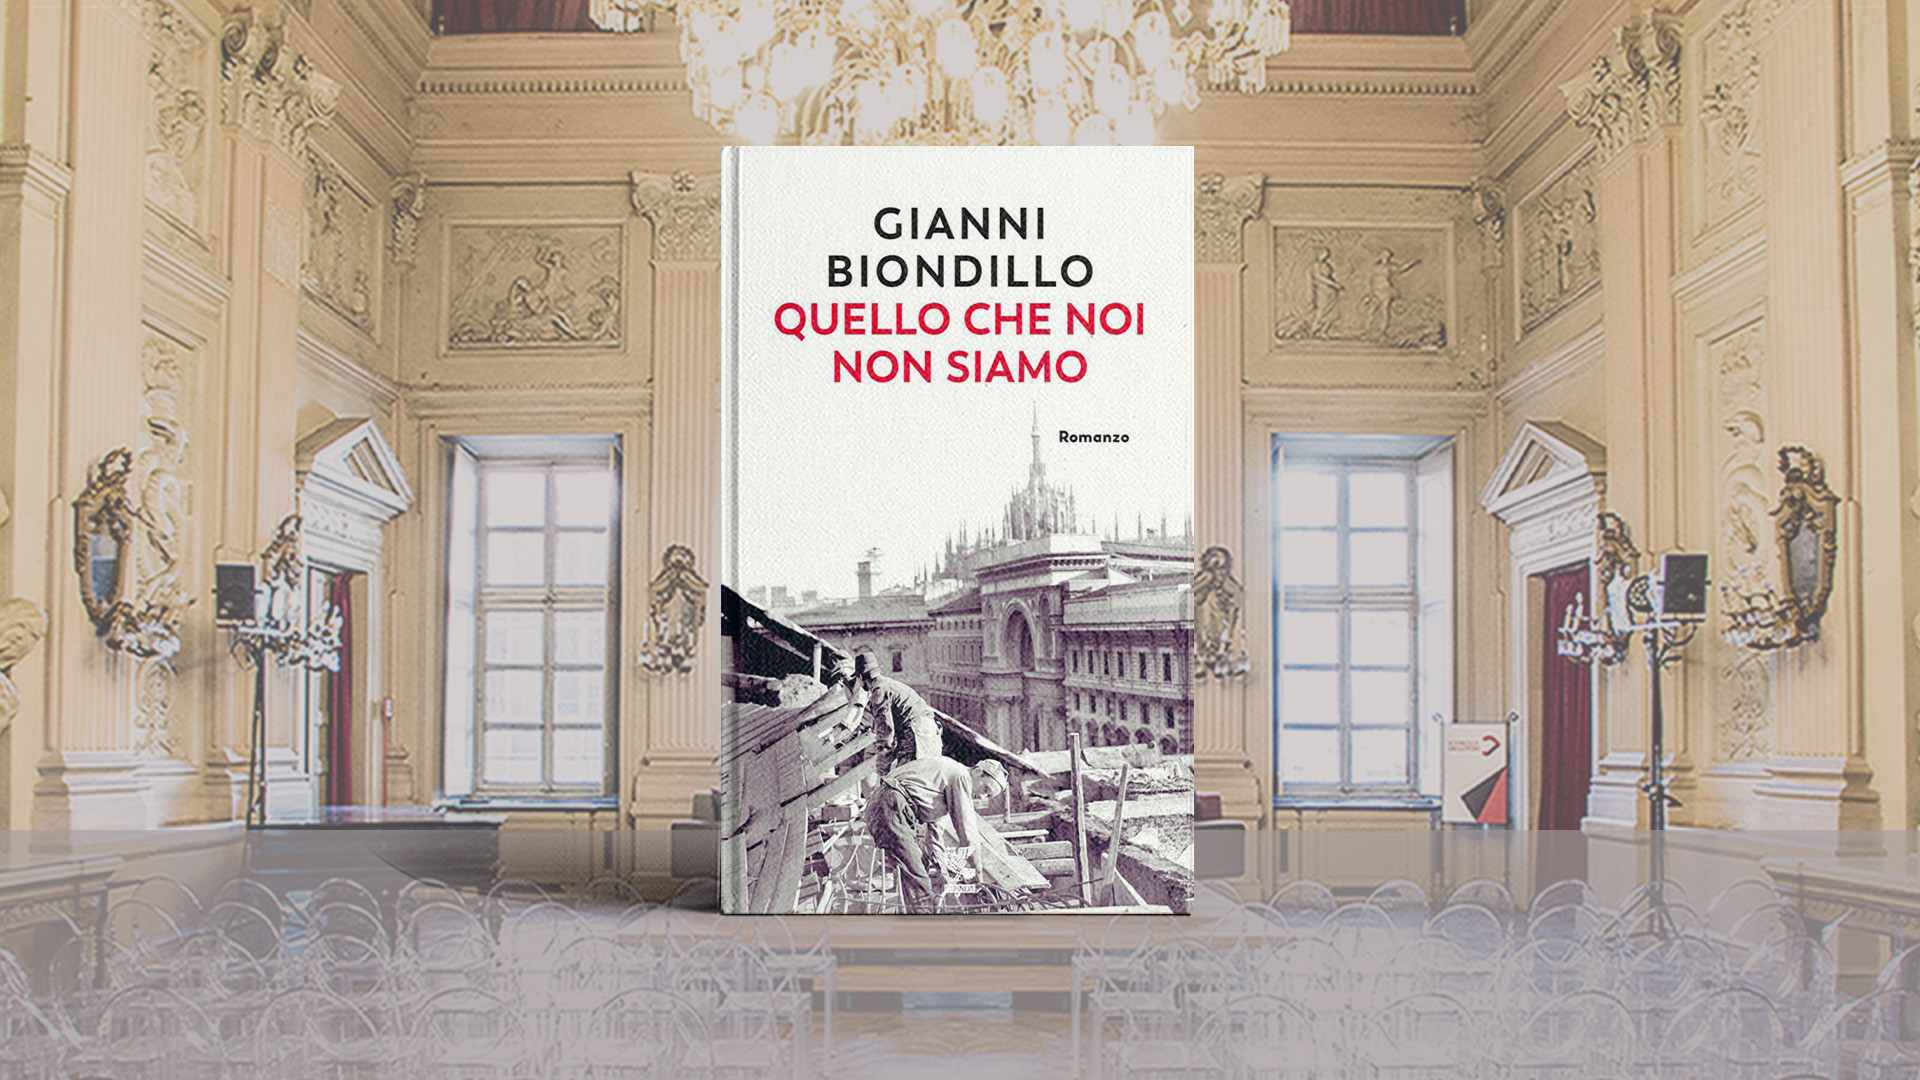 https://torino.circololettori.it/wp-content/uploads/2020/12/Gianni-Biondillo-Quello-che-noi-non-siamo-16-9.jpg